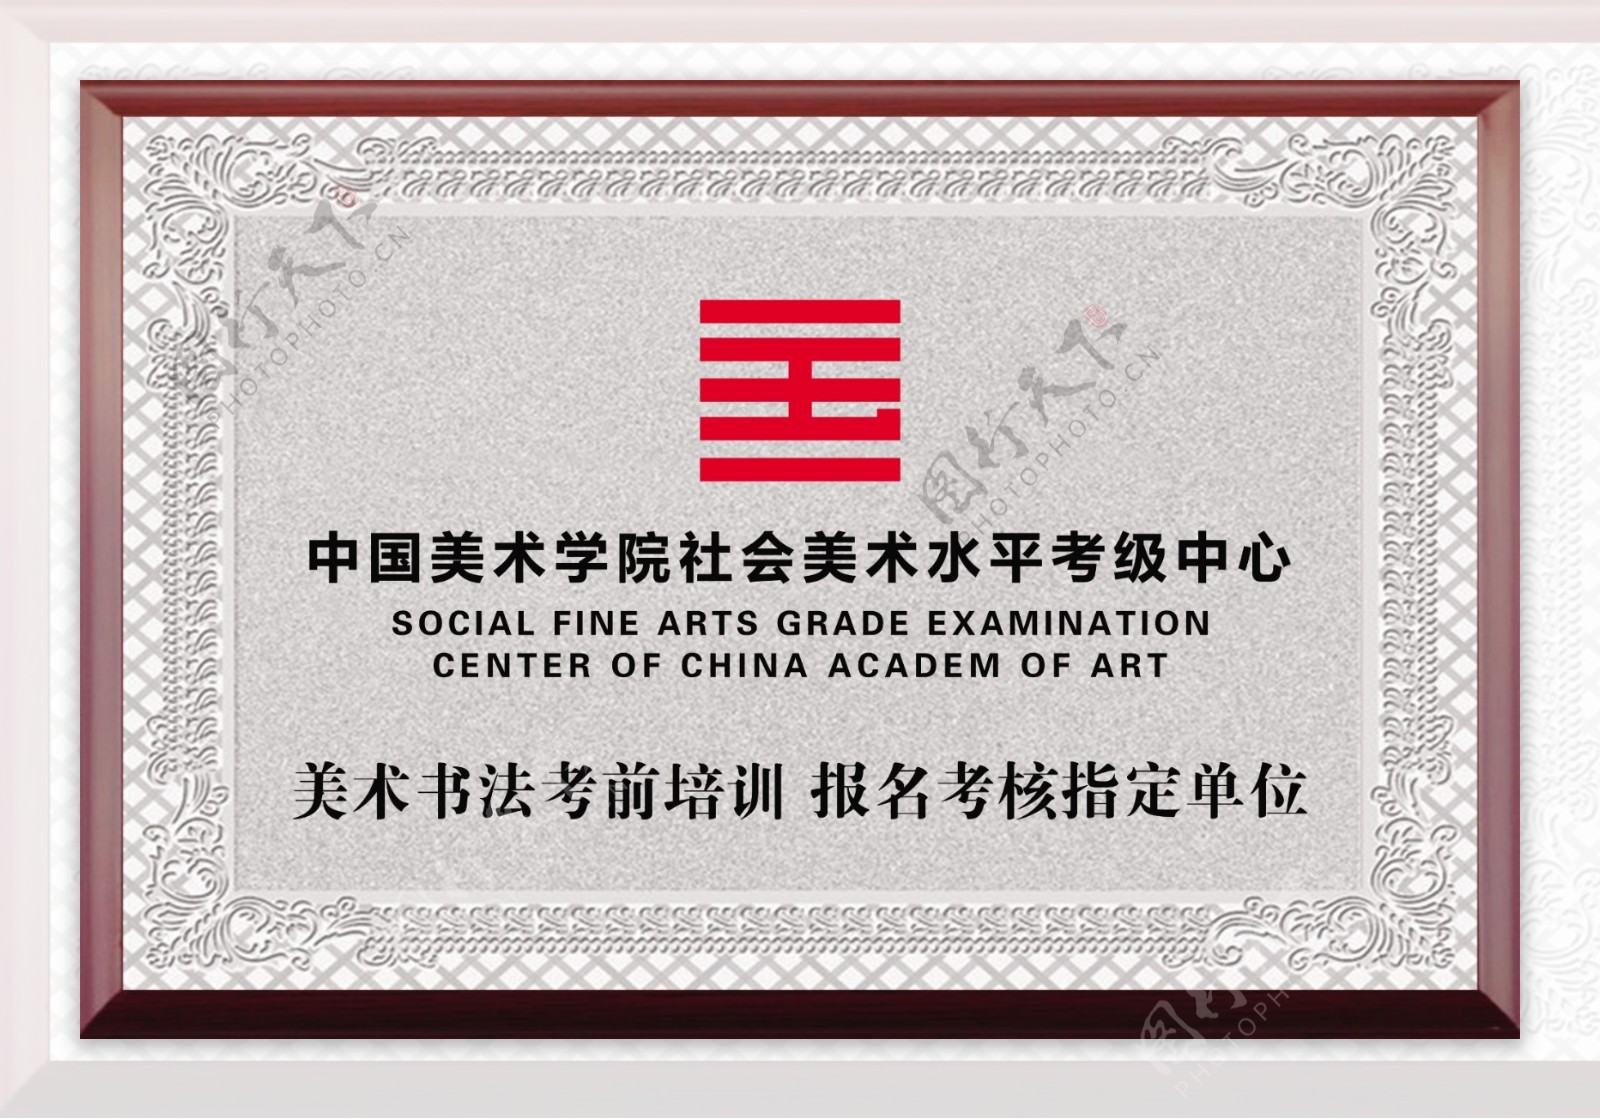 中国美术学院社会美术水平考级中